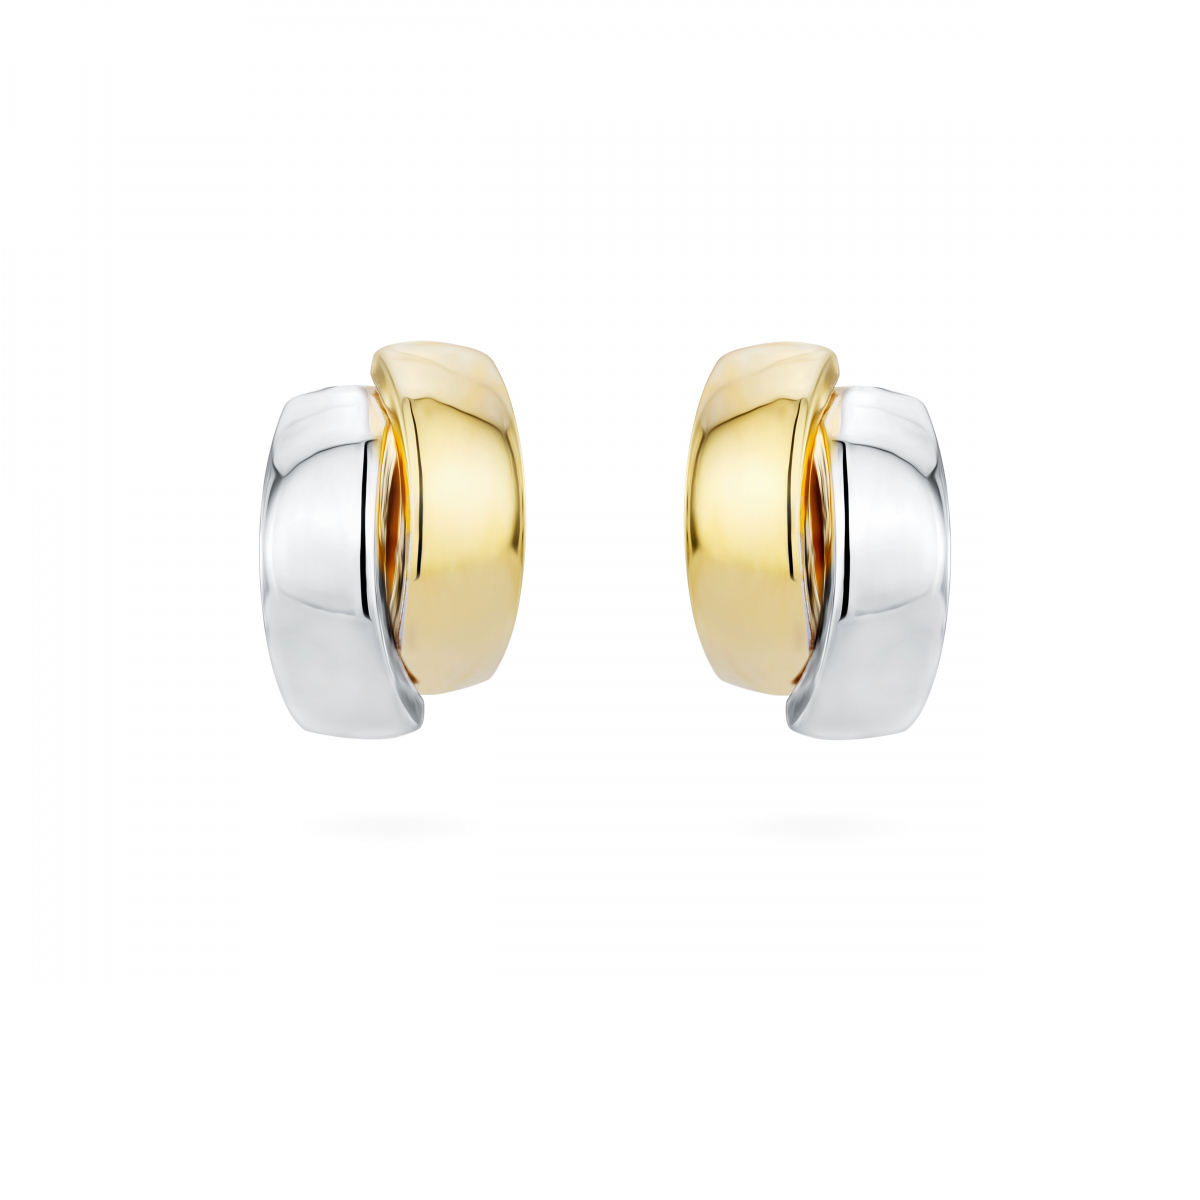 Buy Full Bezel Setting Stud Earrings  Diamonds Factory UK